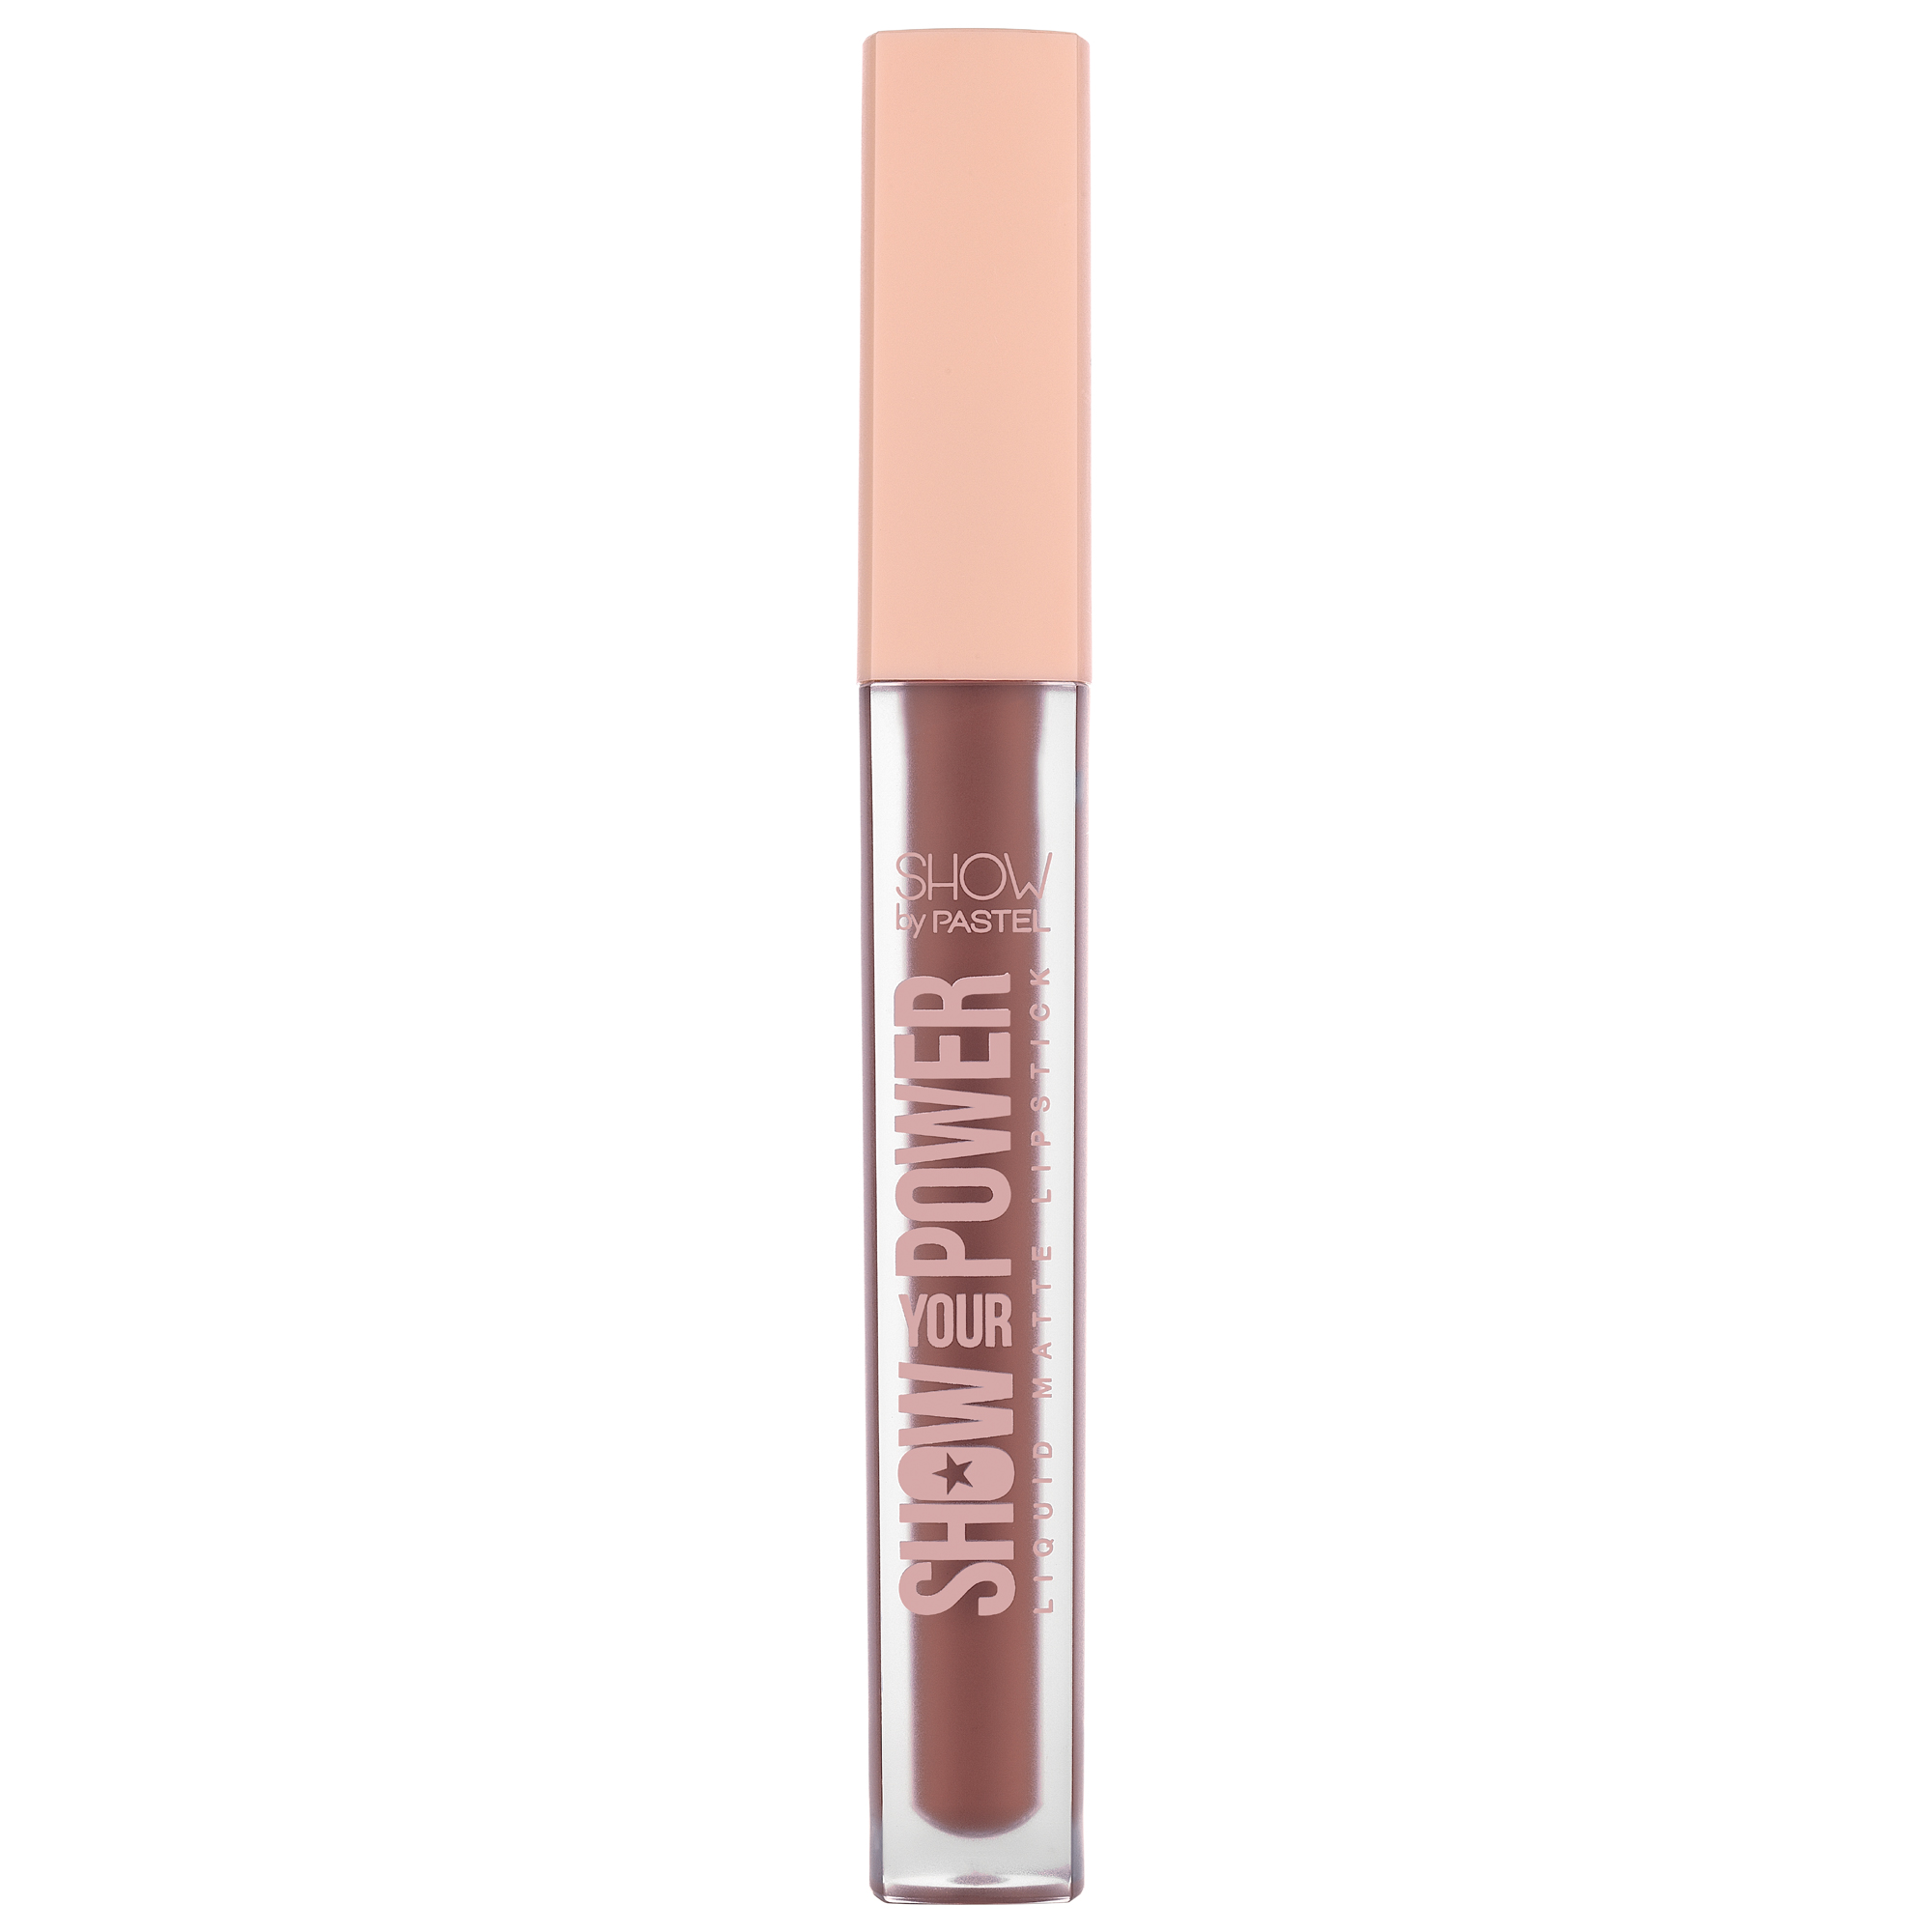 Pastel Show Your Power Liquid Matte Lipstick 603